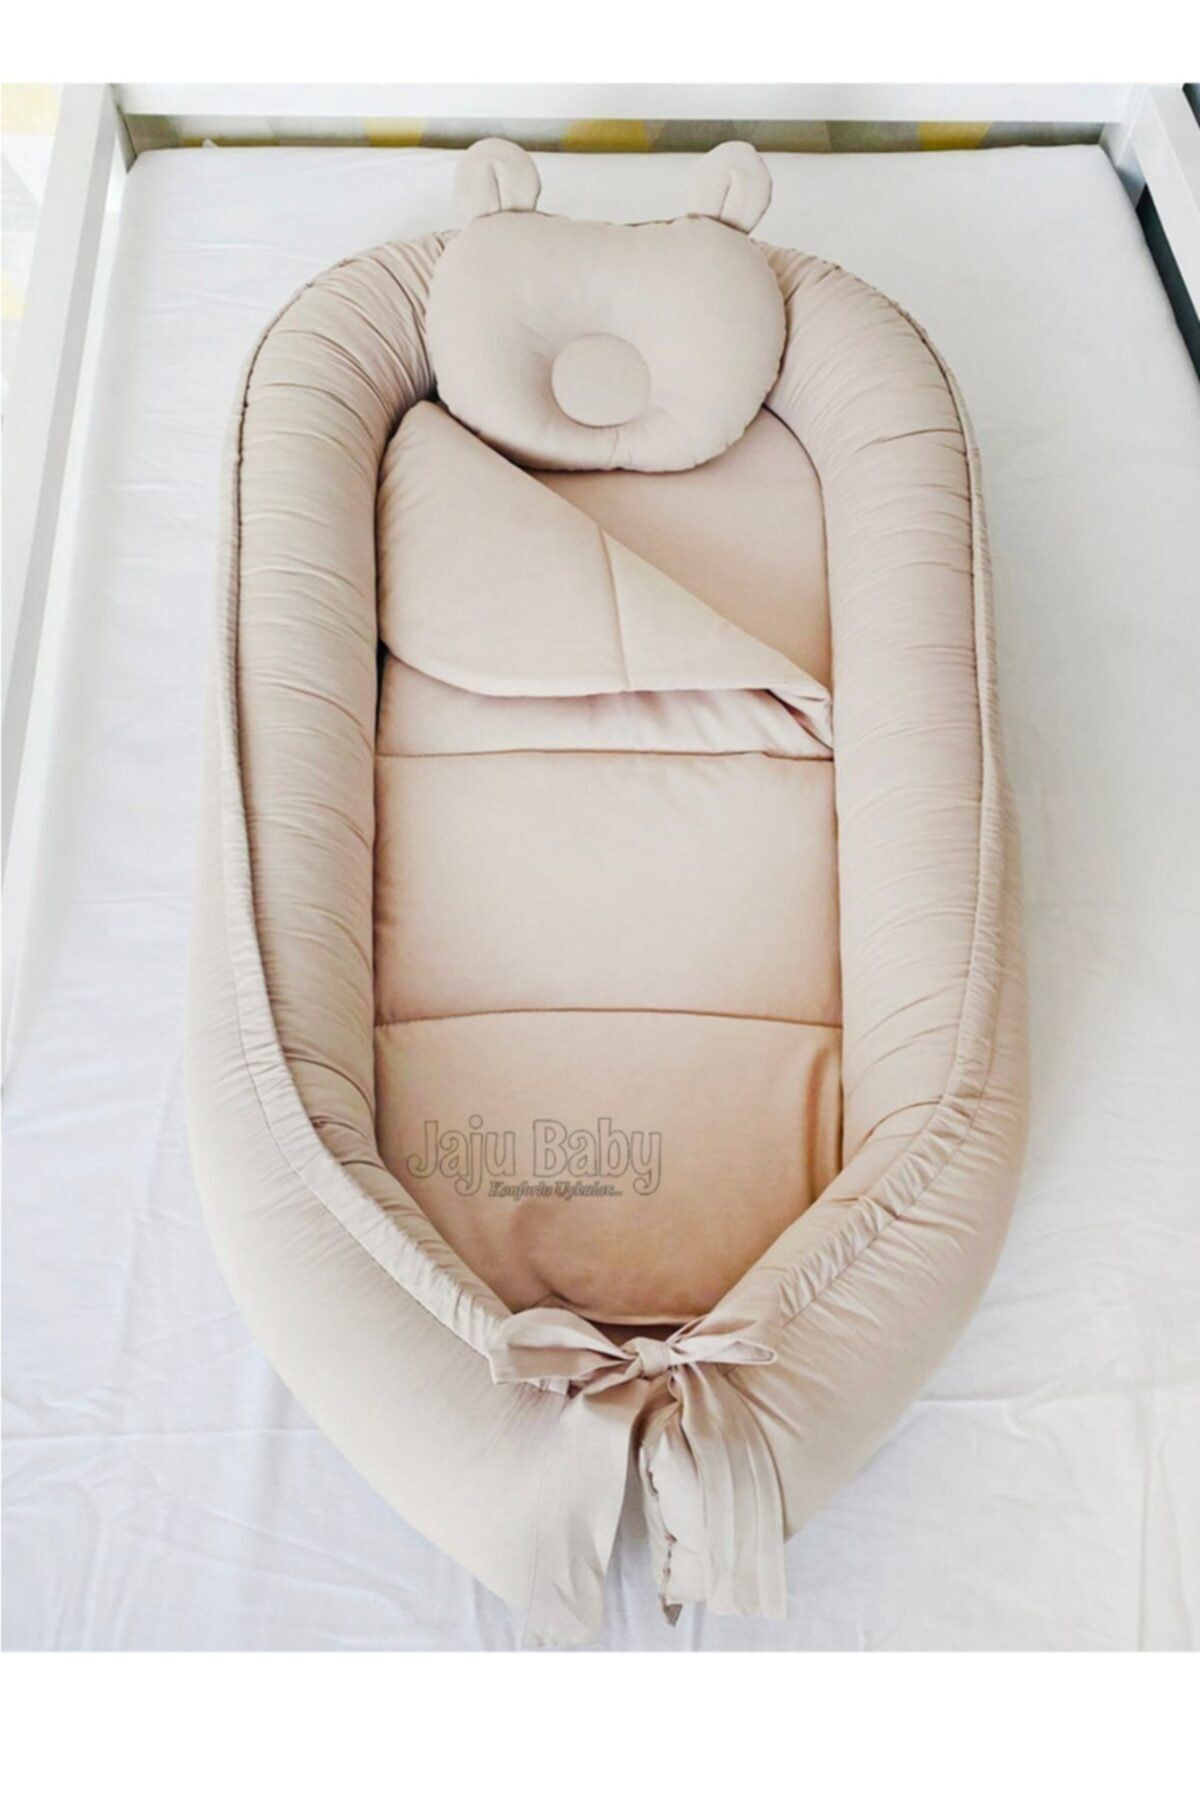 Jaju Baby Nest Açık Kahve Tasarım Lüx Jaju-babynest Anne Yanı Bebek Yatağı